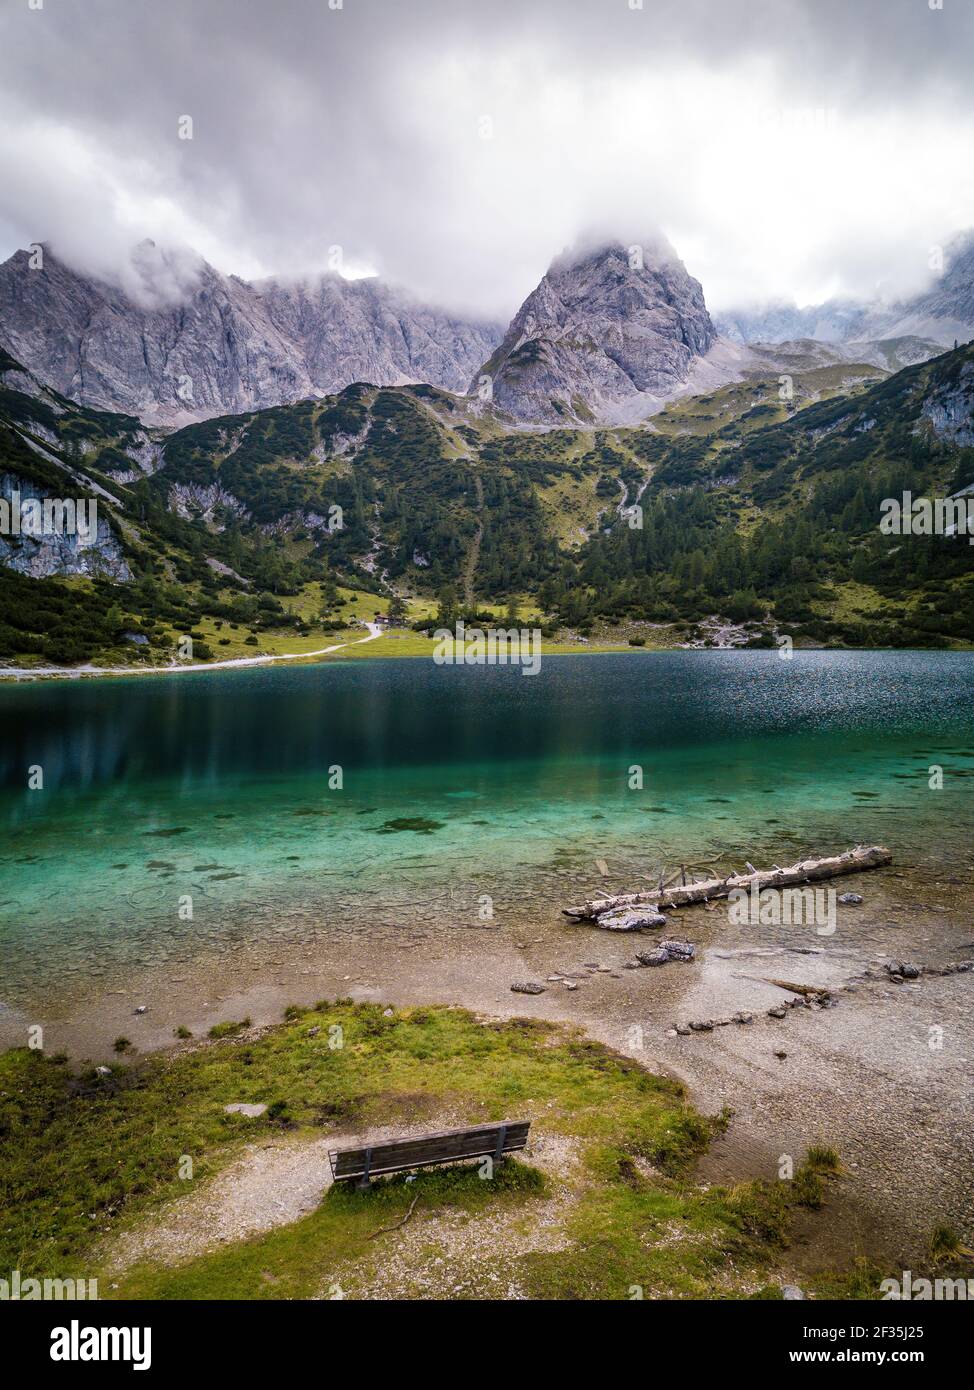 Vista elevata del lago di montagna turchese e della cresta che sorge sul lato opposto. Cielo nuvoloso. Relax nella natura vicino Ehrwald, Tirolo, Austria. Foto Stock